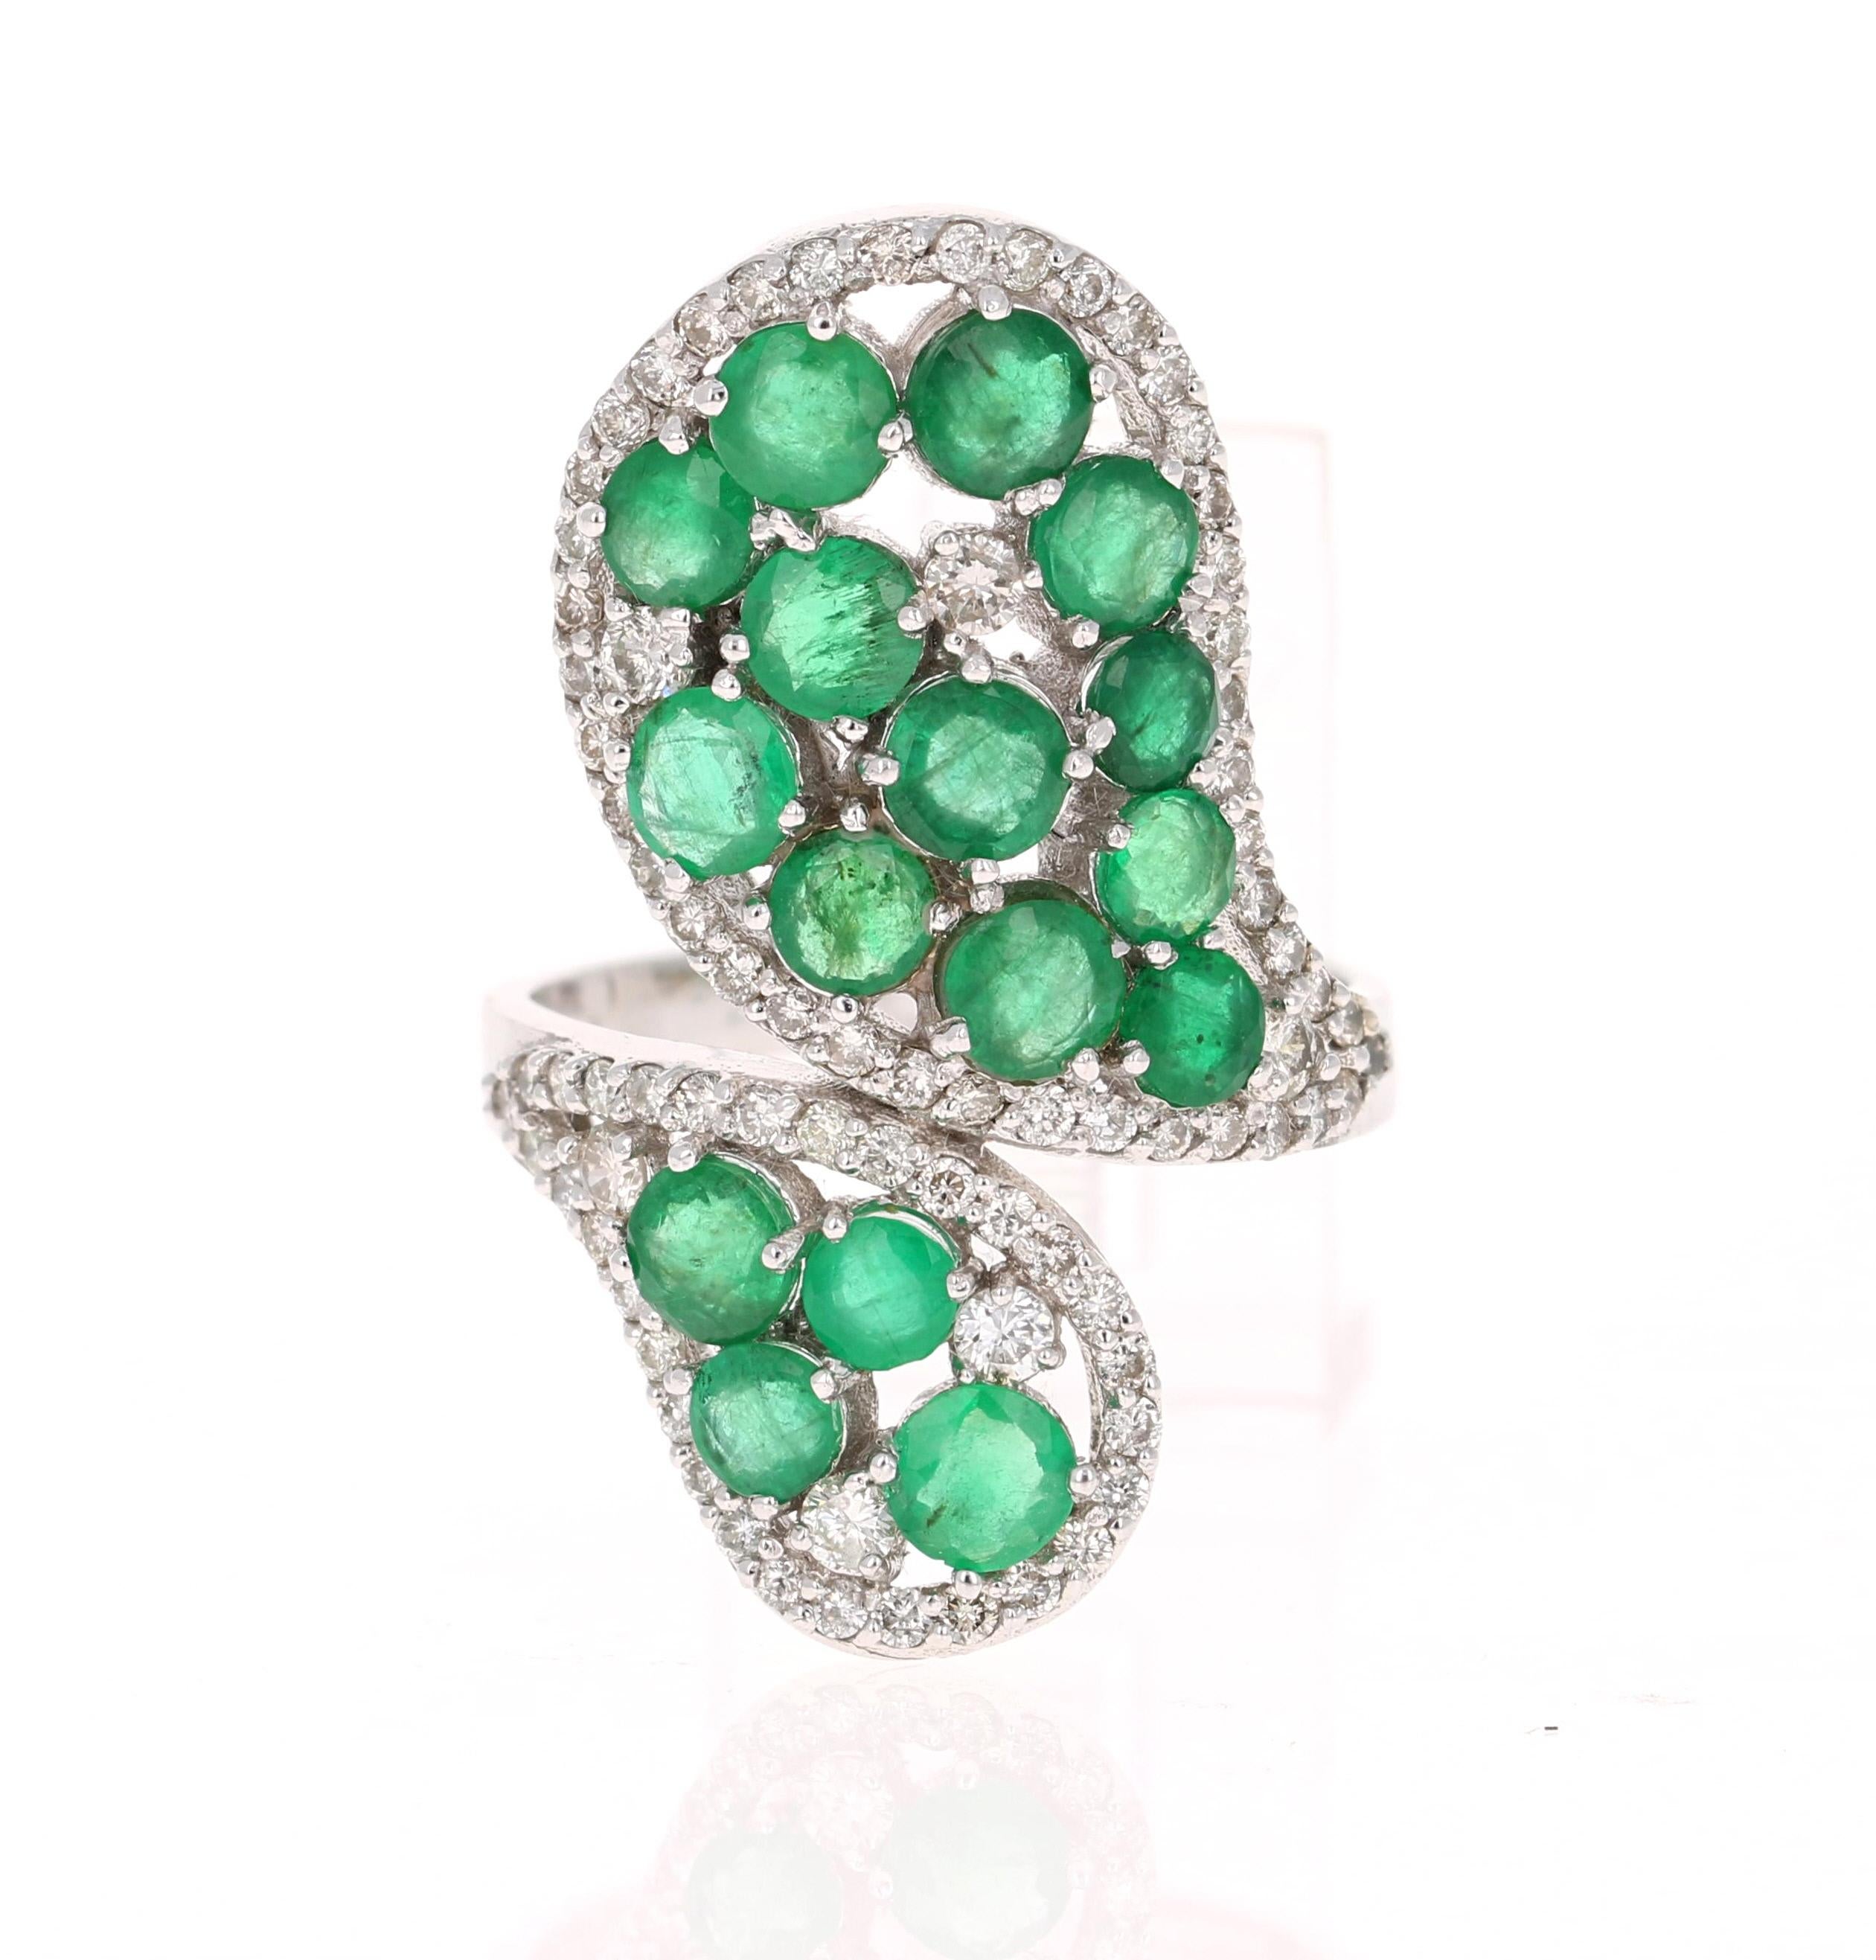 Dieser Smaragdring ist absolut wunderschön. 

Natürliche Smaragde im Rundschliff mit einem Gewicht von 3,31 Karat 
79 Diamanten im Rundschliff mit einem Gewicht von 0,94 Karat
Das Gesamtkaratgewicht des Rings beträgt 4,25 Karat

Dieser Ring ist aus